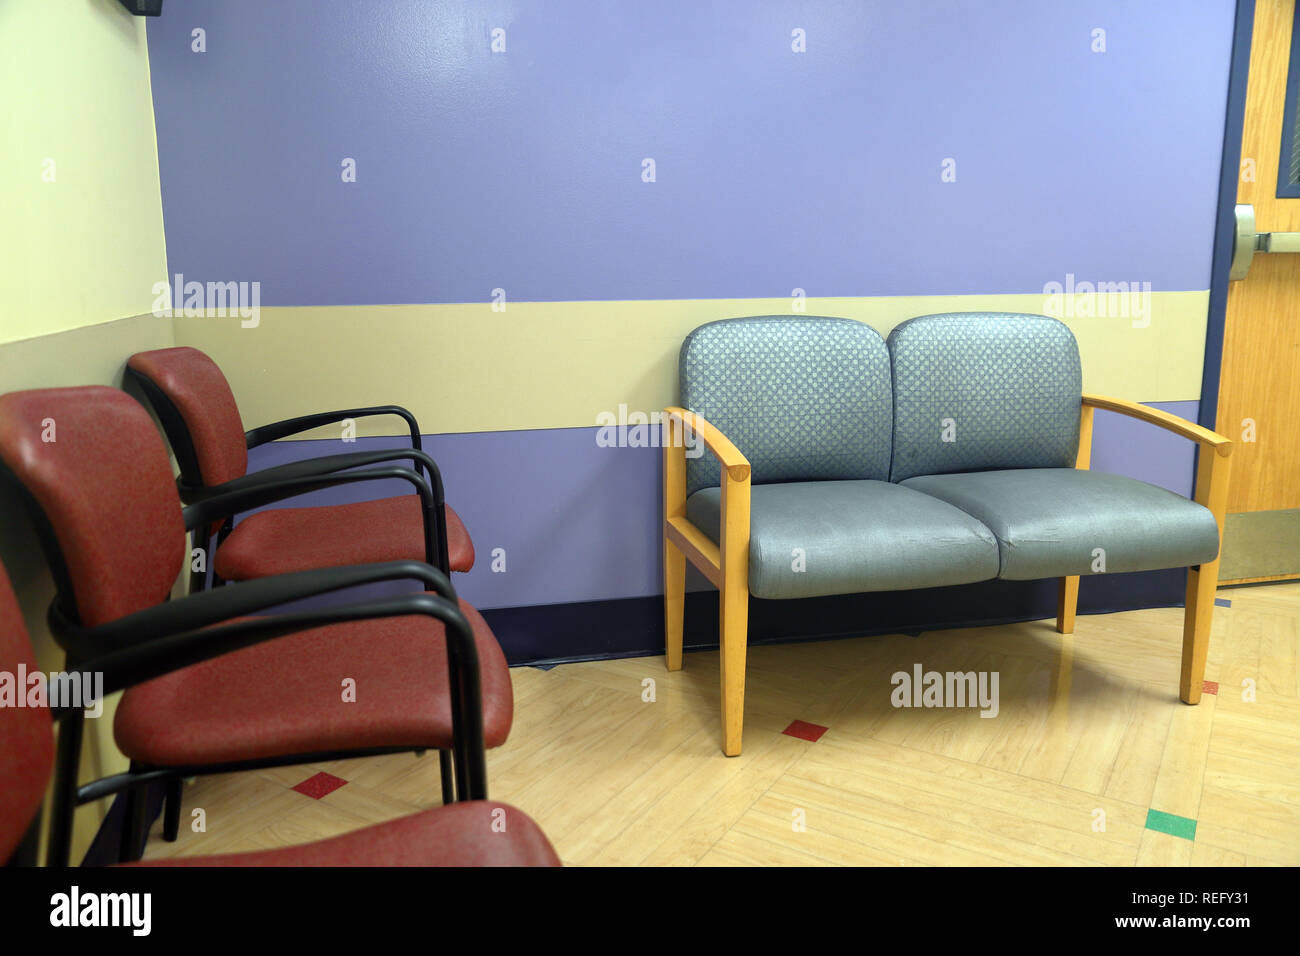 Sillas en colorida sala espera de consultorio médico Fotografía de stock Alamy